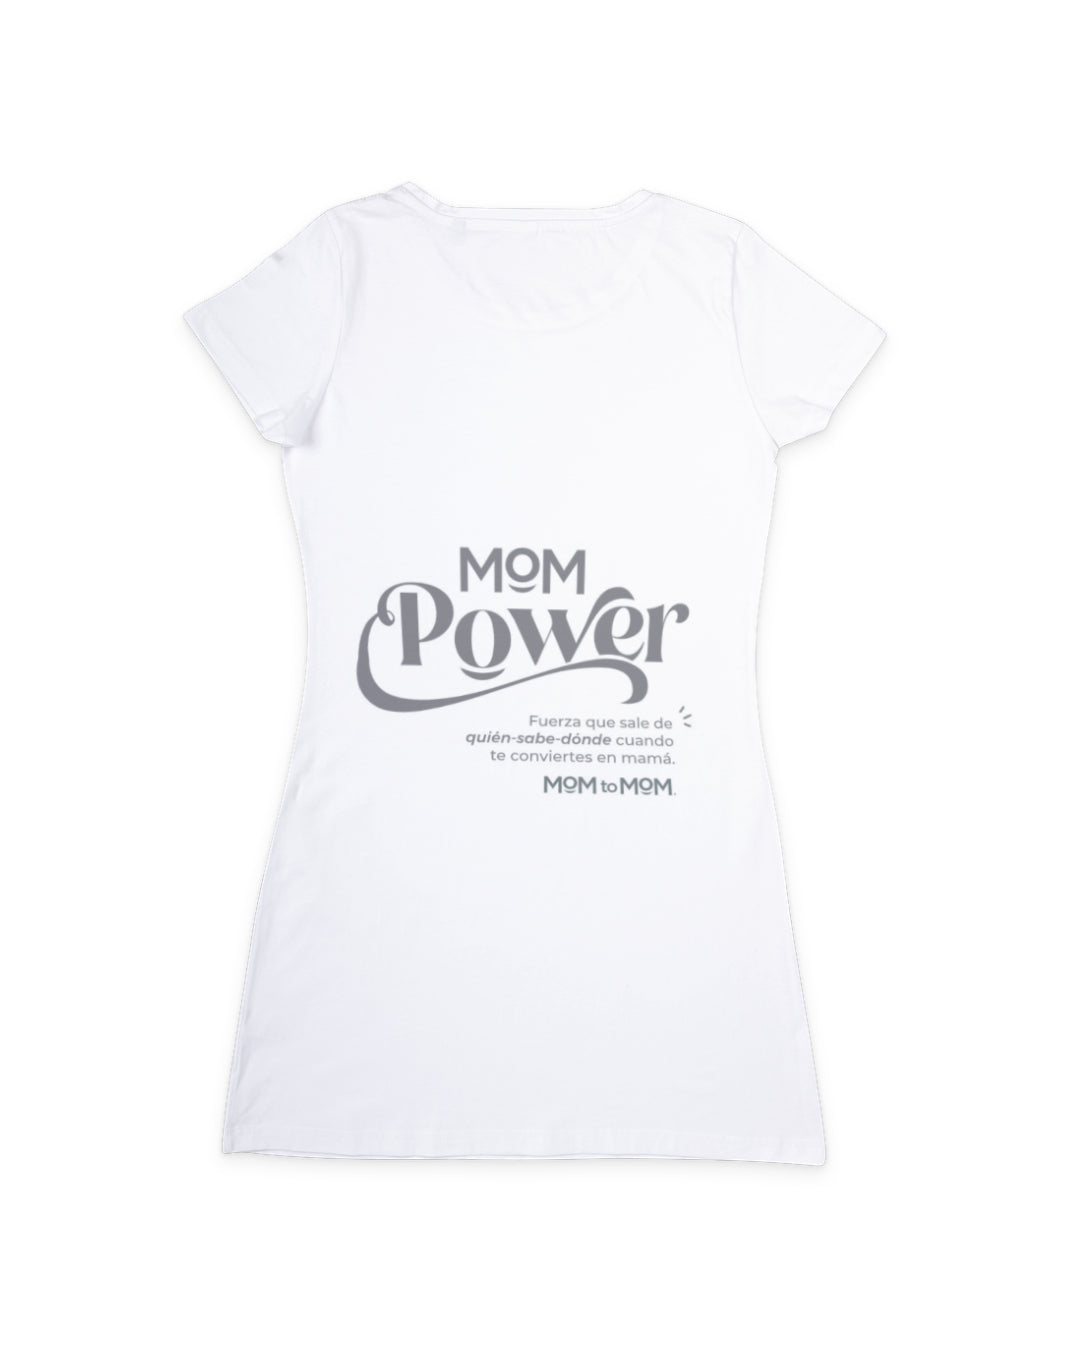 Playera MOM Power MOM to MOM